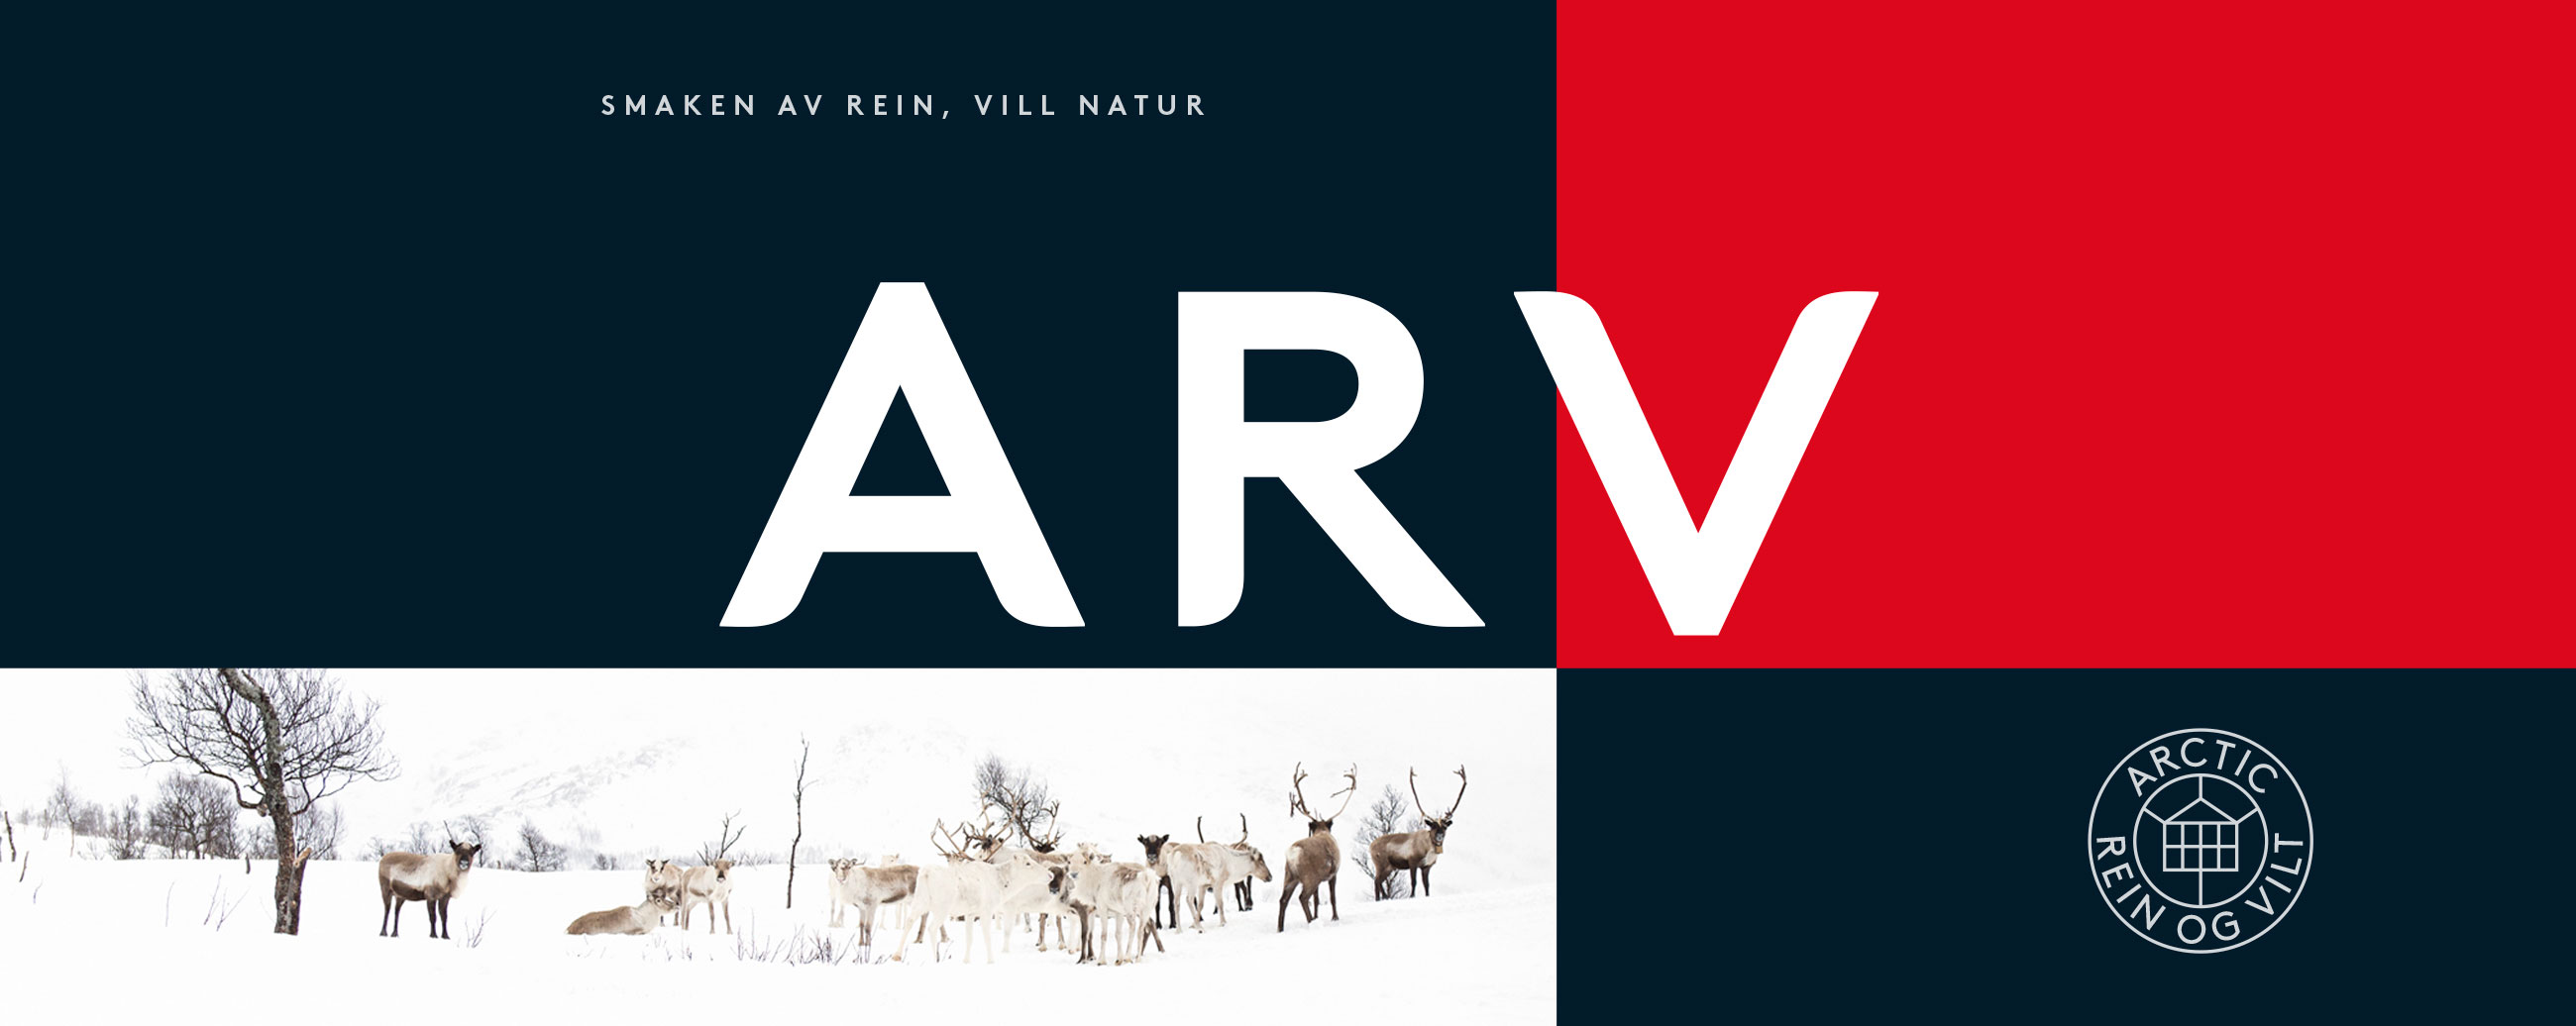 ARV reindsdyrkjøtt identitet profil